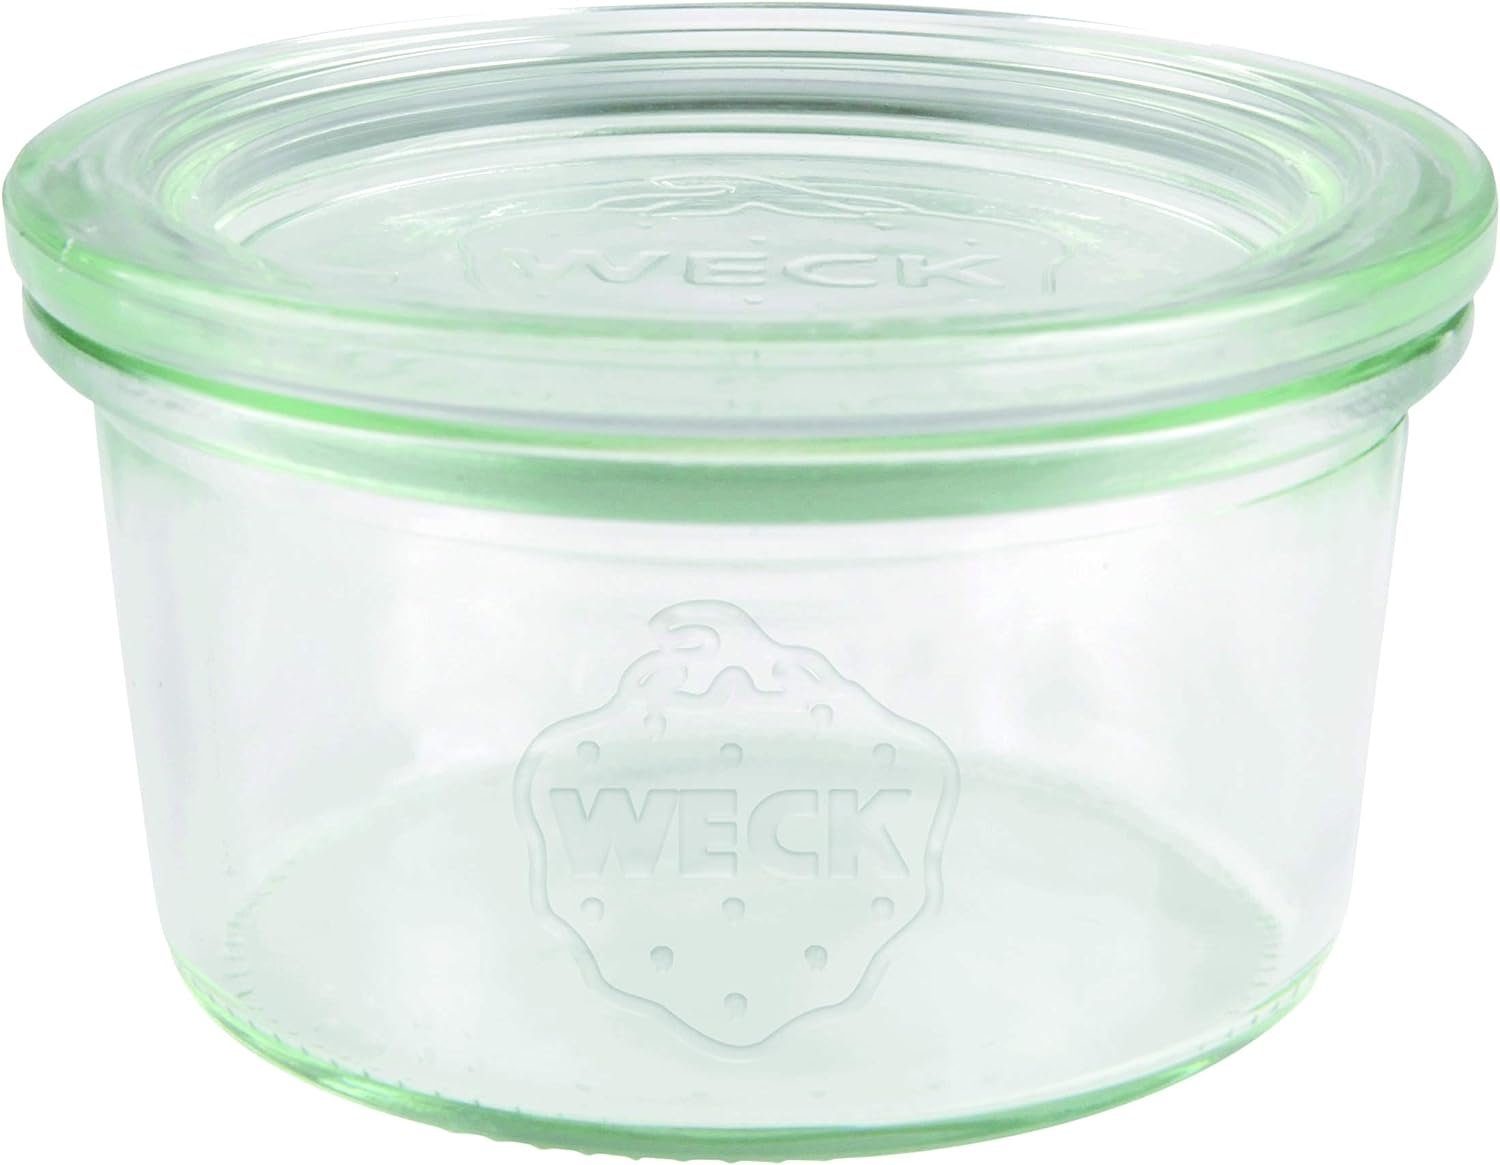 WECK Einmachglas Sturzglas Inhalt 165 ml Einmach Glas mit Glasdeckel | Einmachgläser